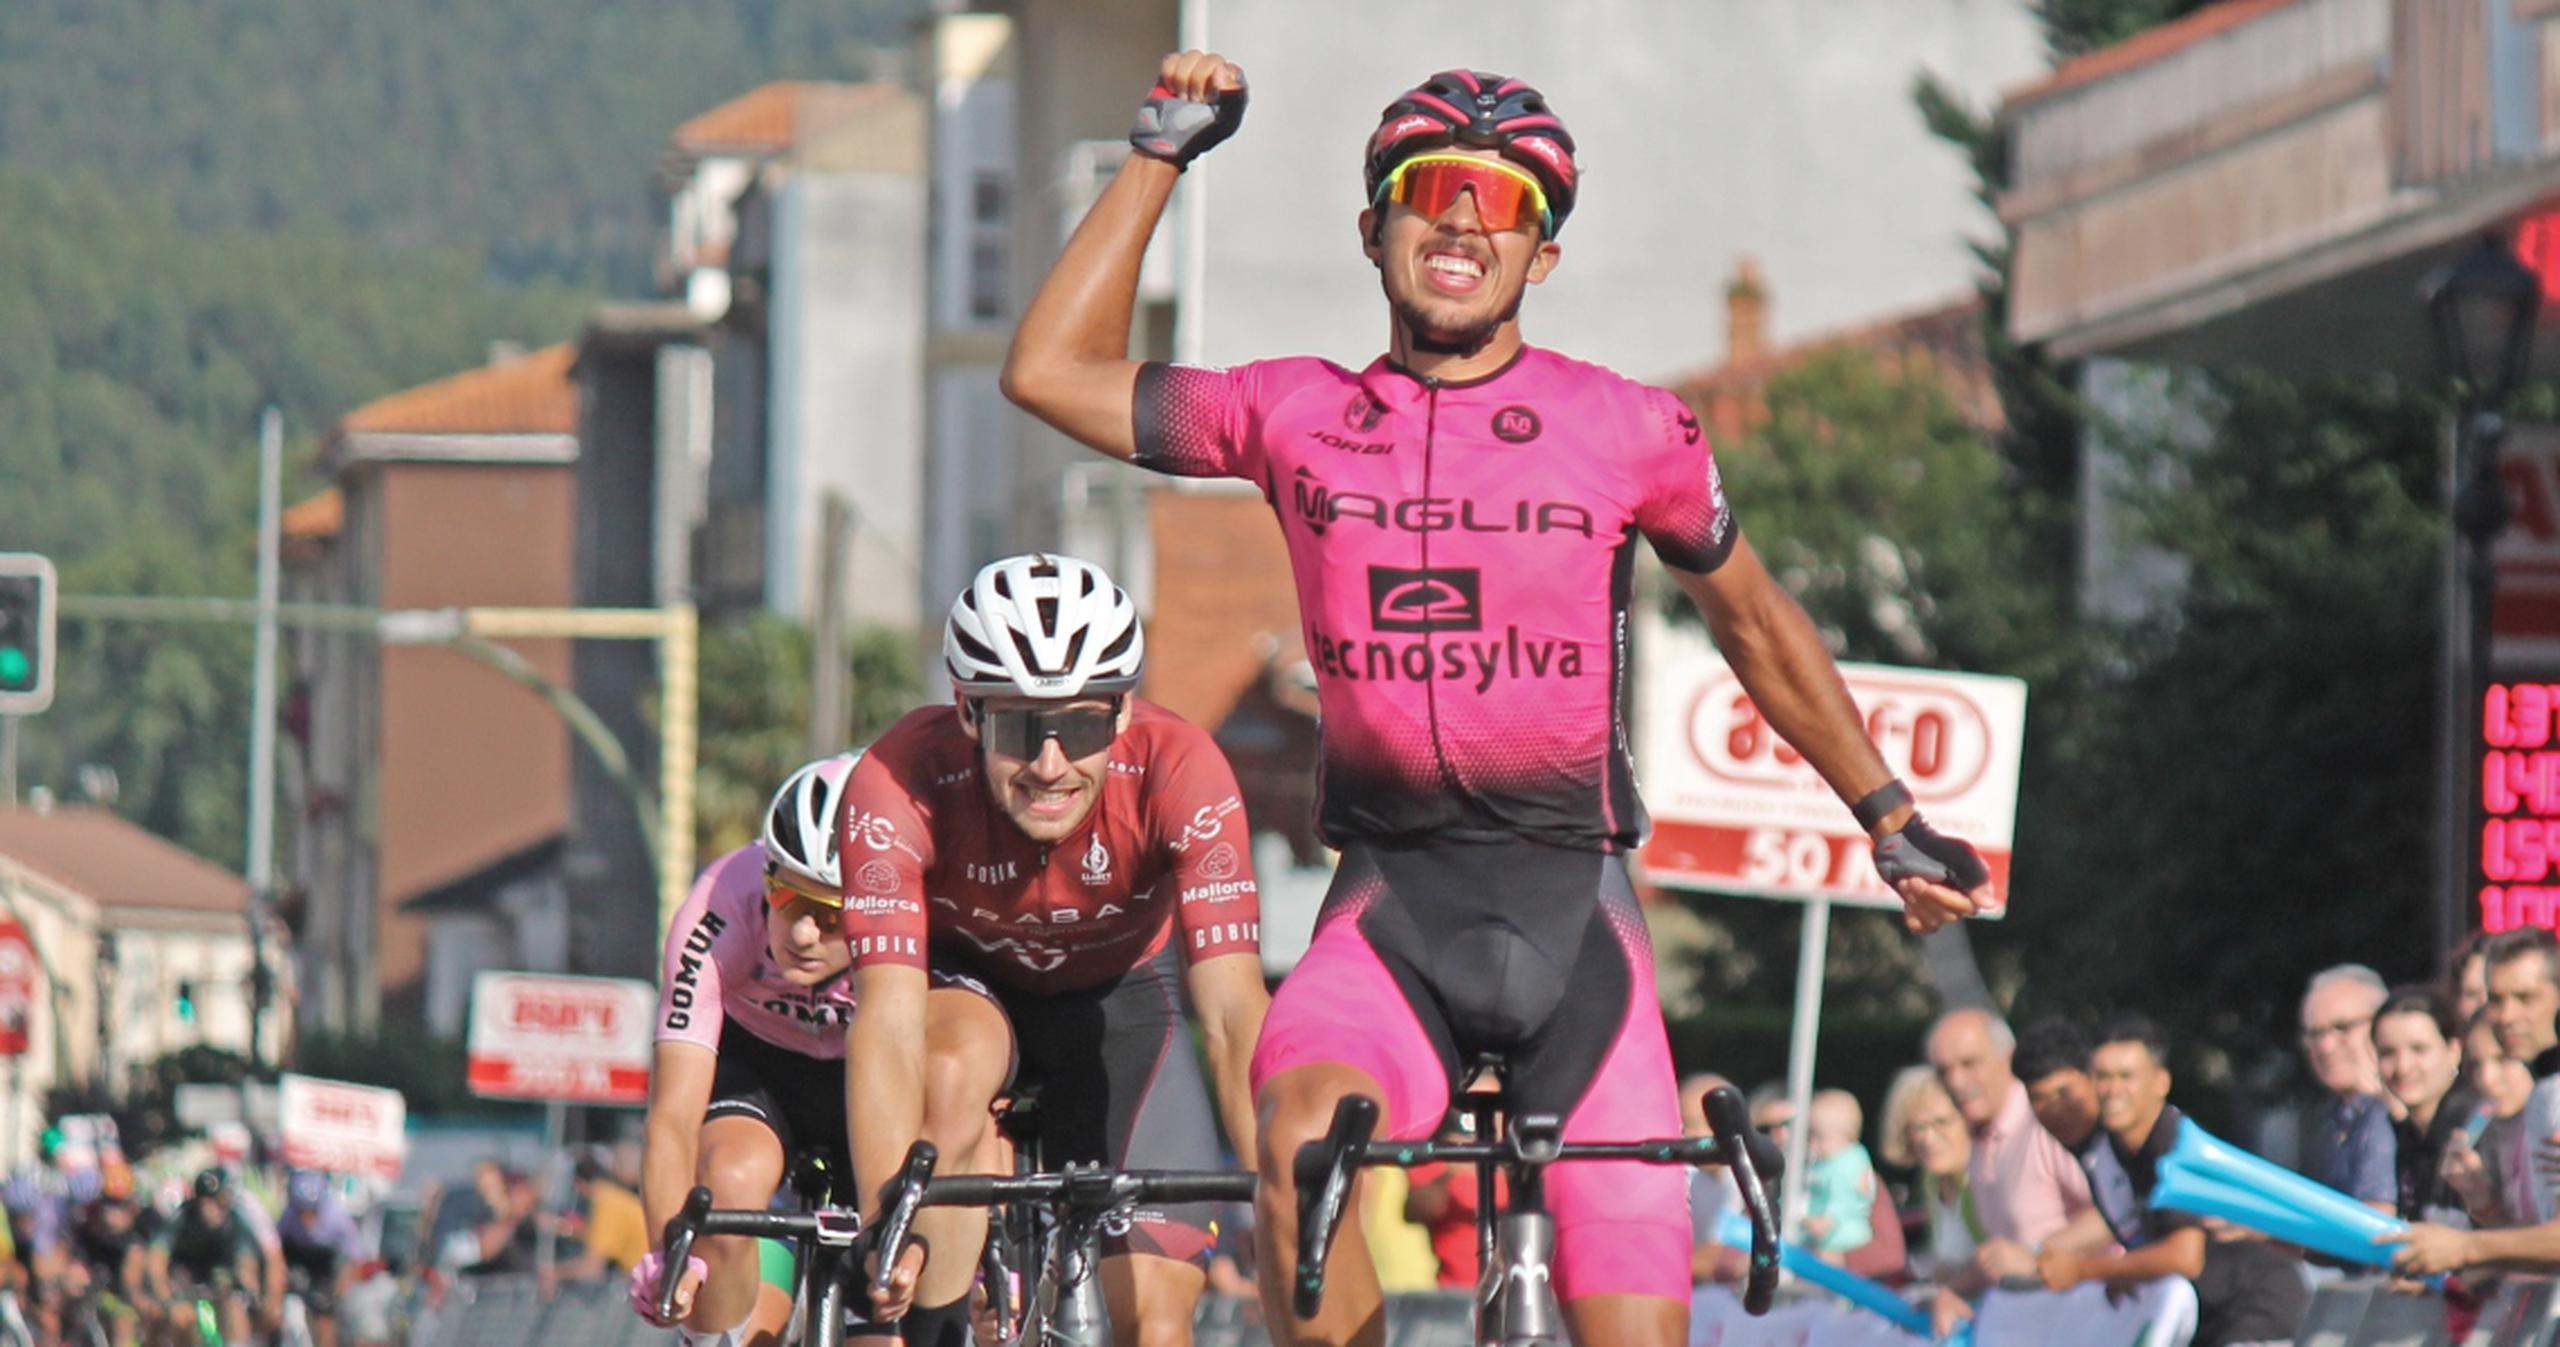 Christopher Morales levanta un brazo en señal de victoria luego de ganar la segunda etapa del corriente Circuito Montañés en España.